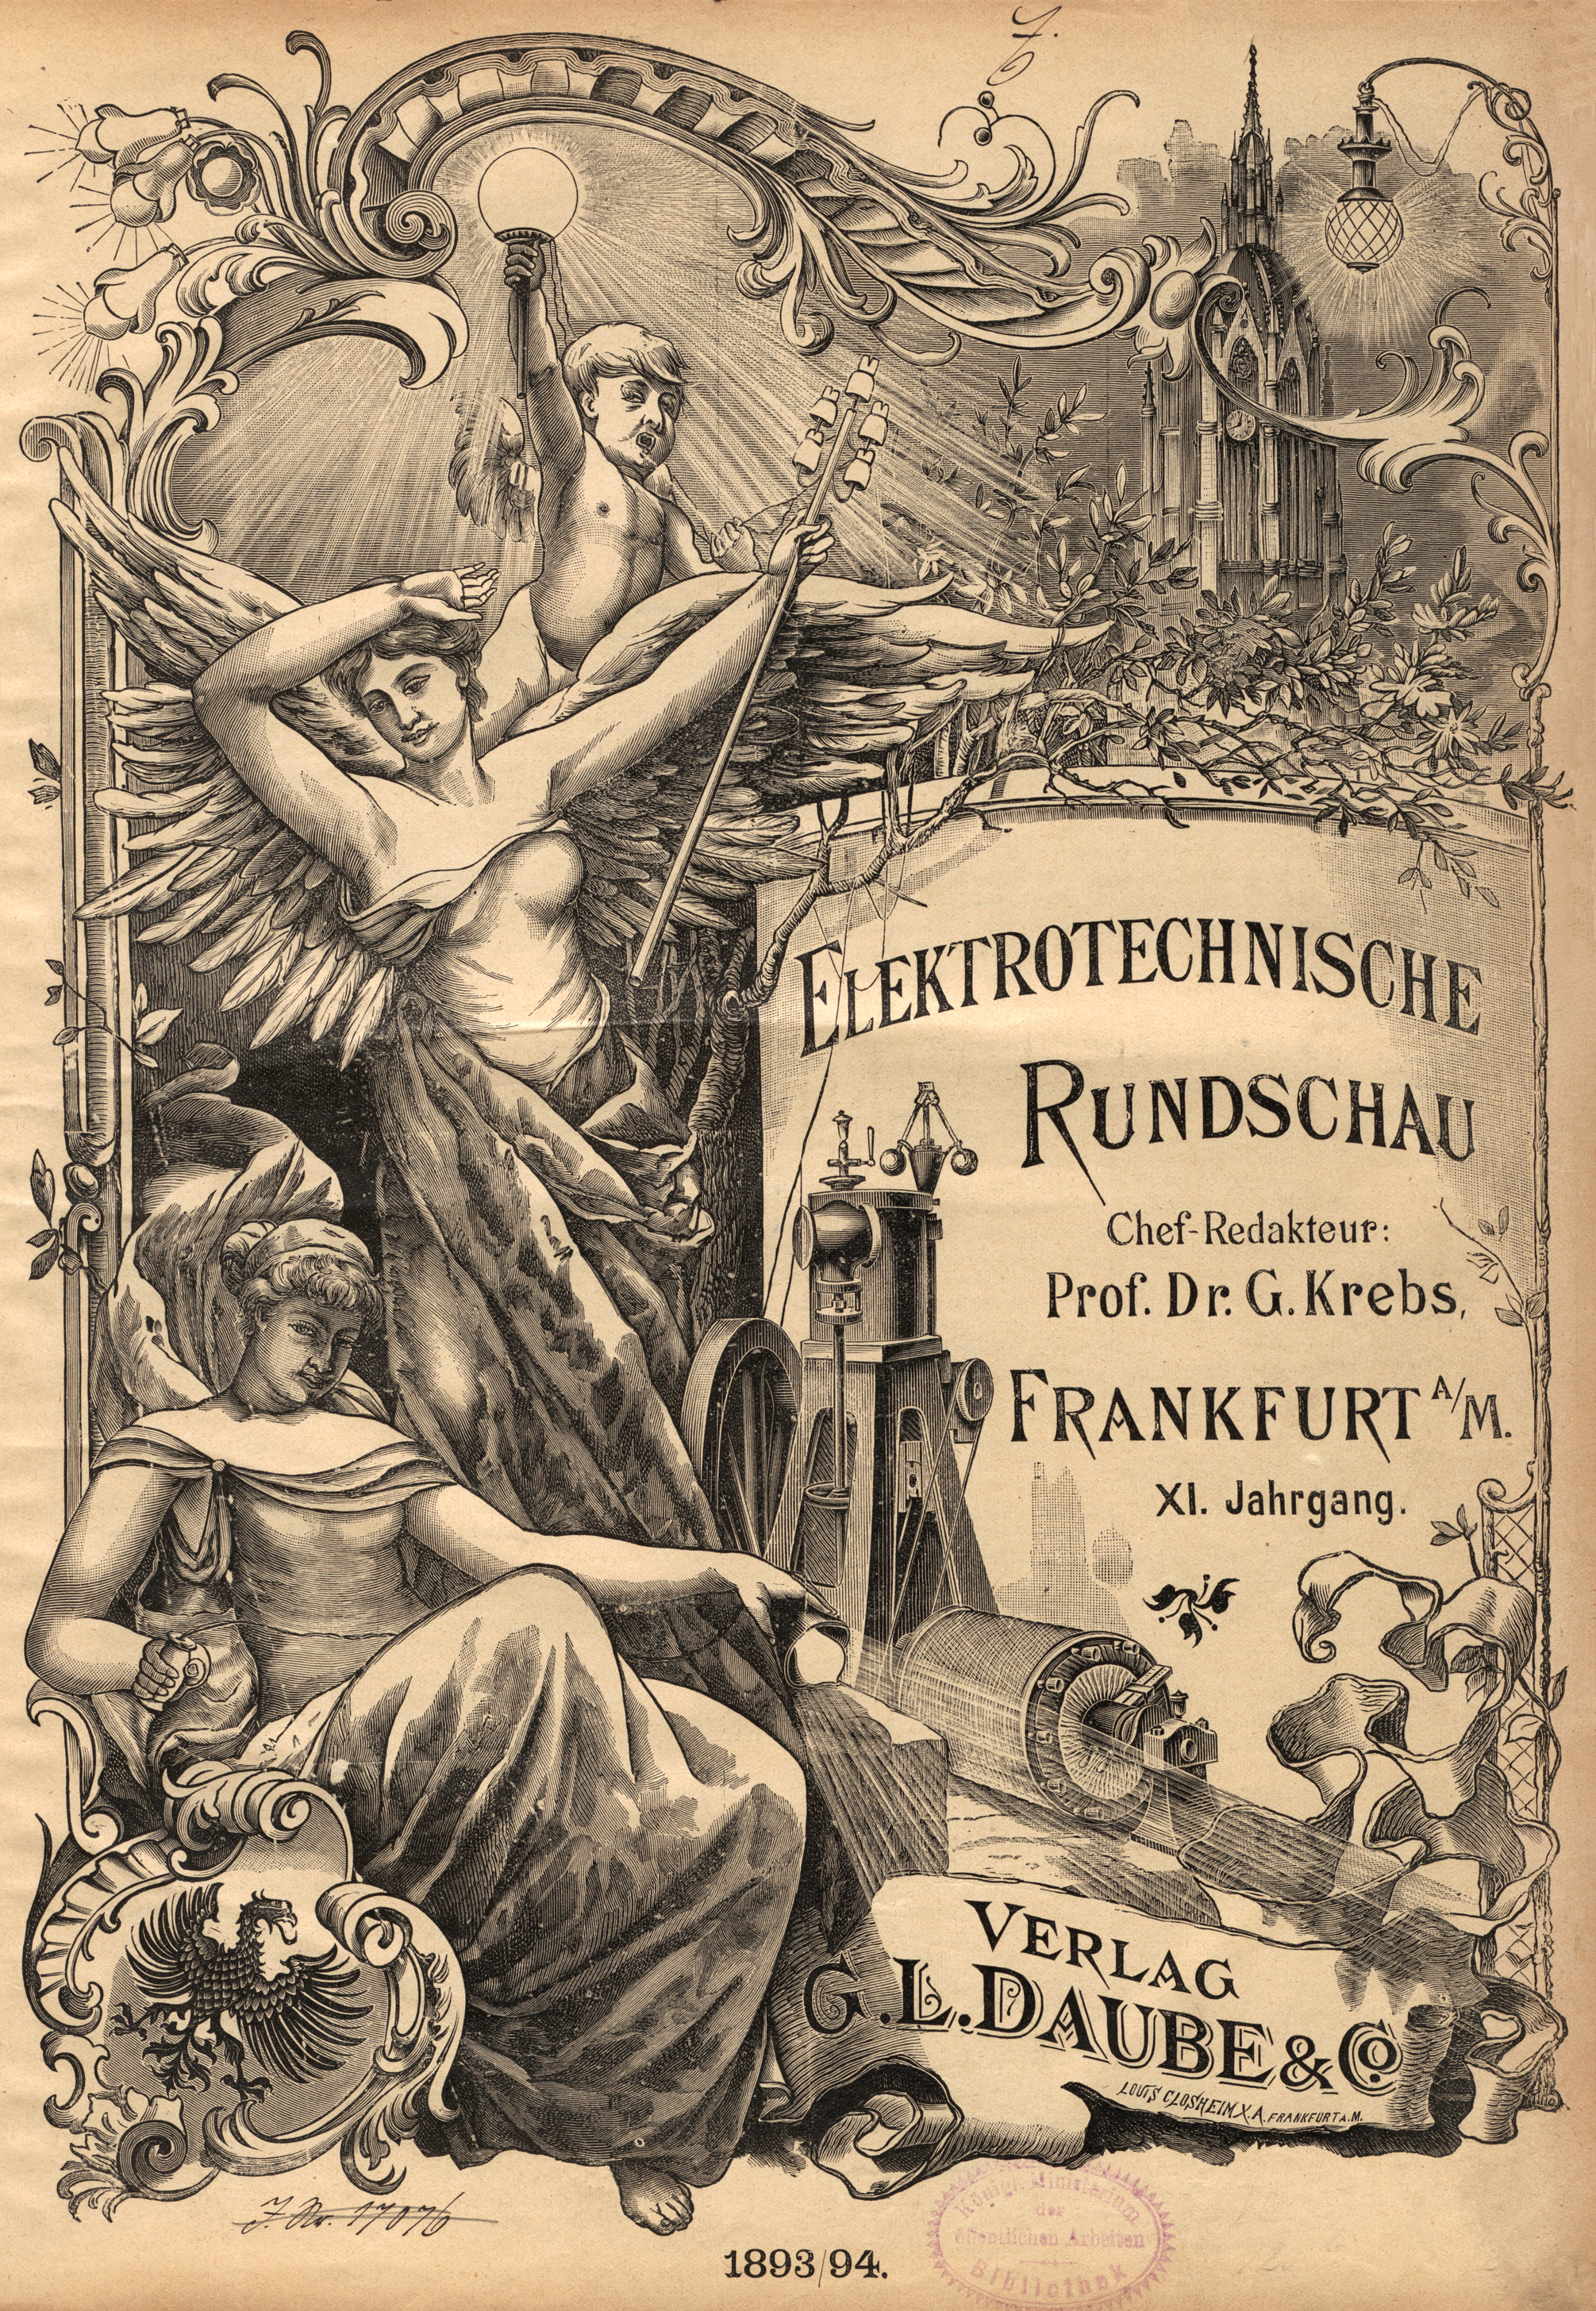 Elektrotechnische Rundschau : Zeitschrift für die Leistungen und Fortschritte auf dem Gebiete der angewandten Elektrizitätslehre,1893/94, Index